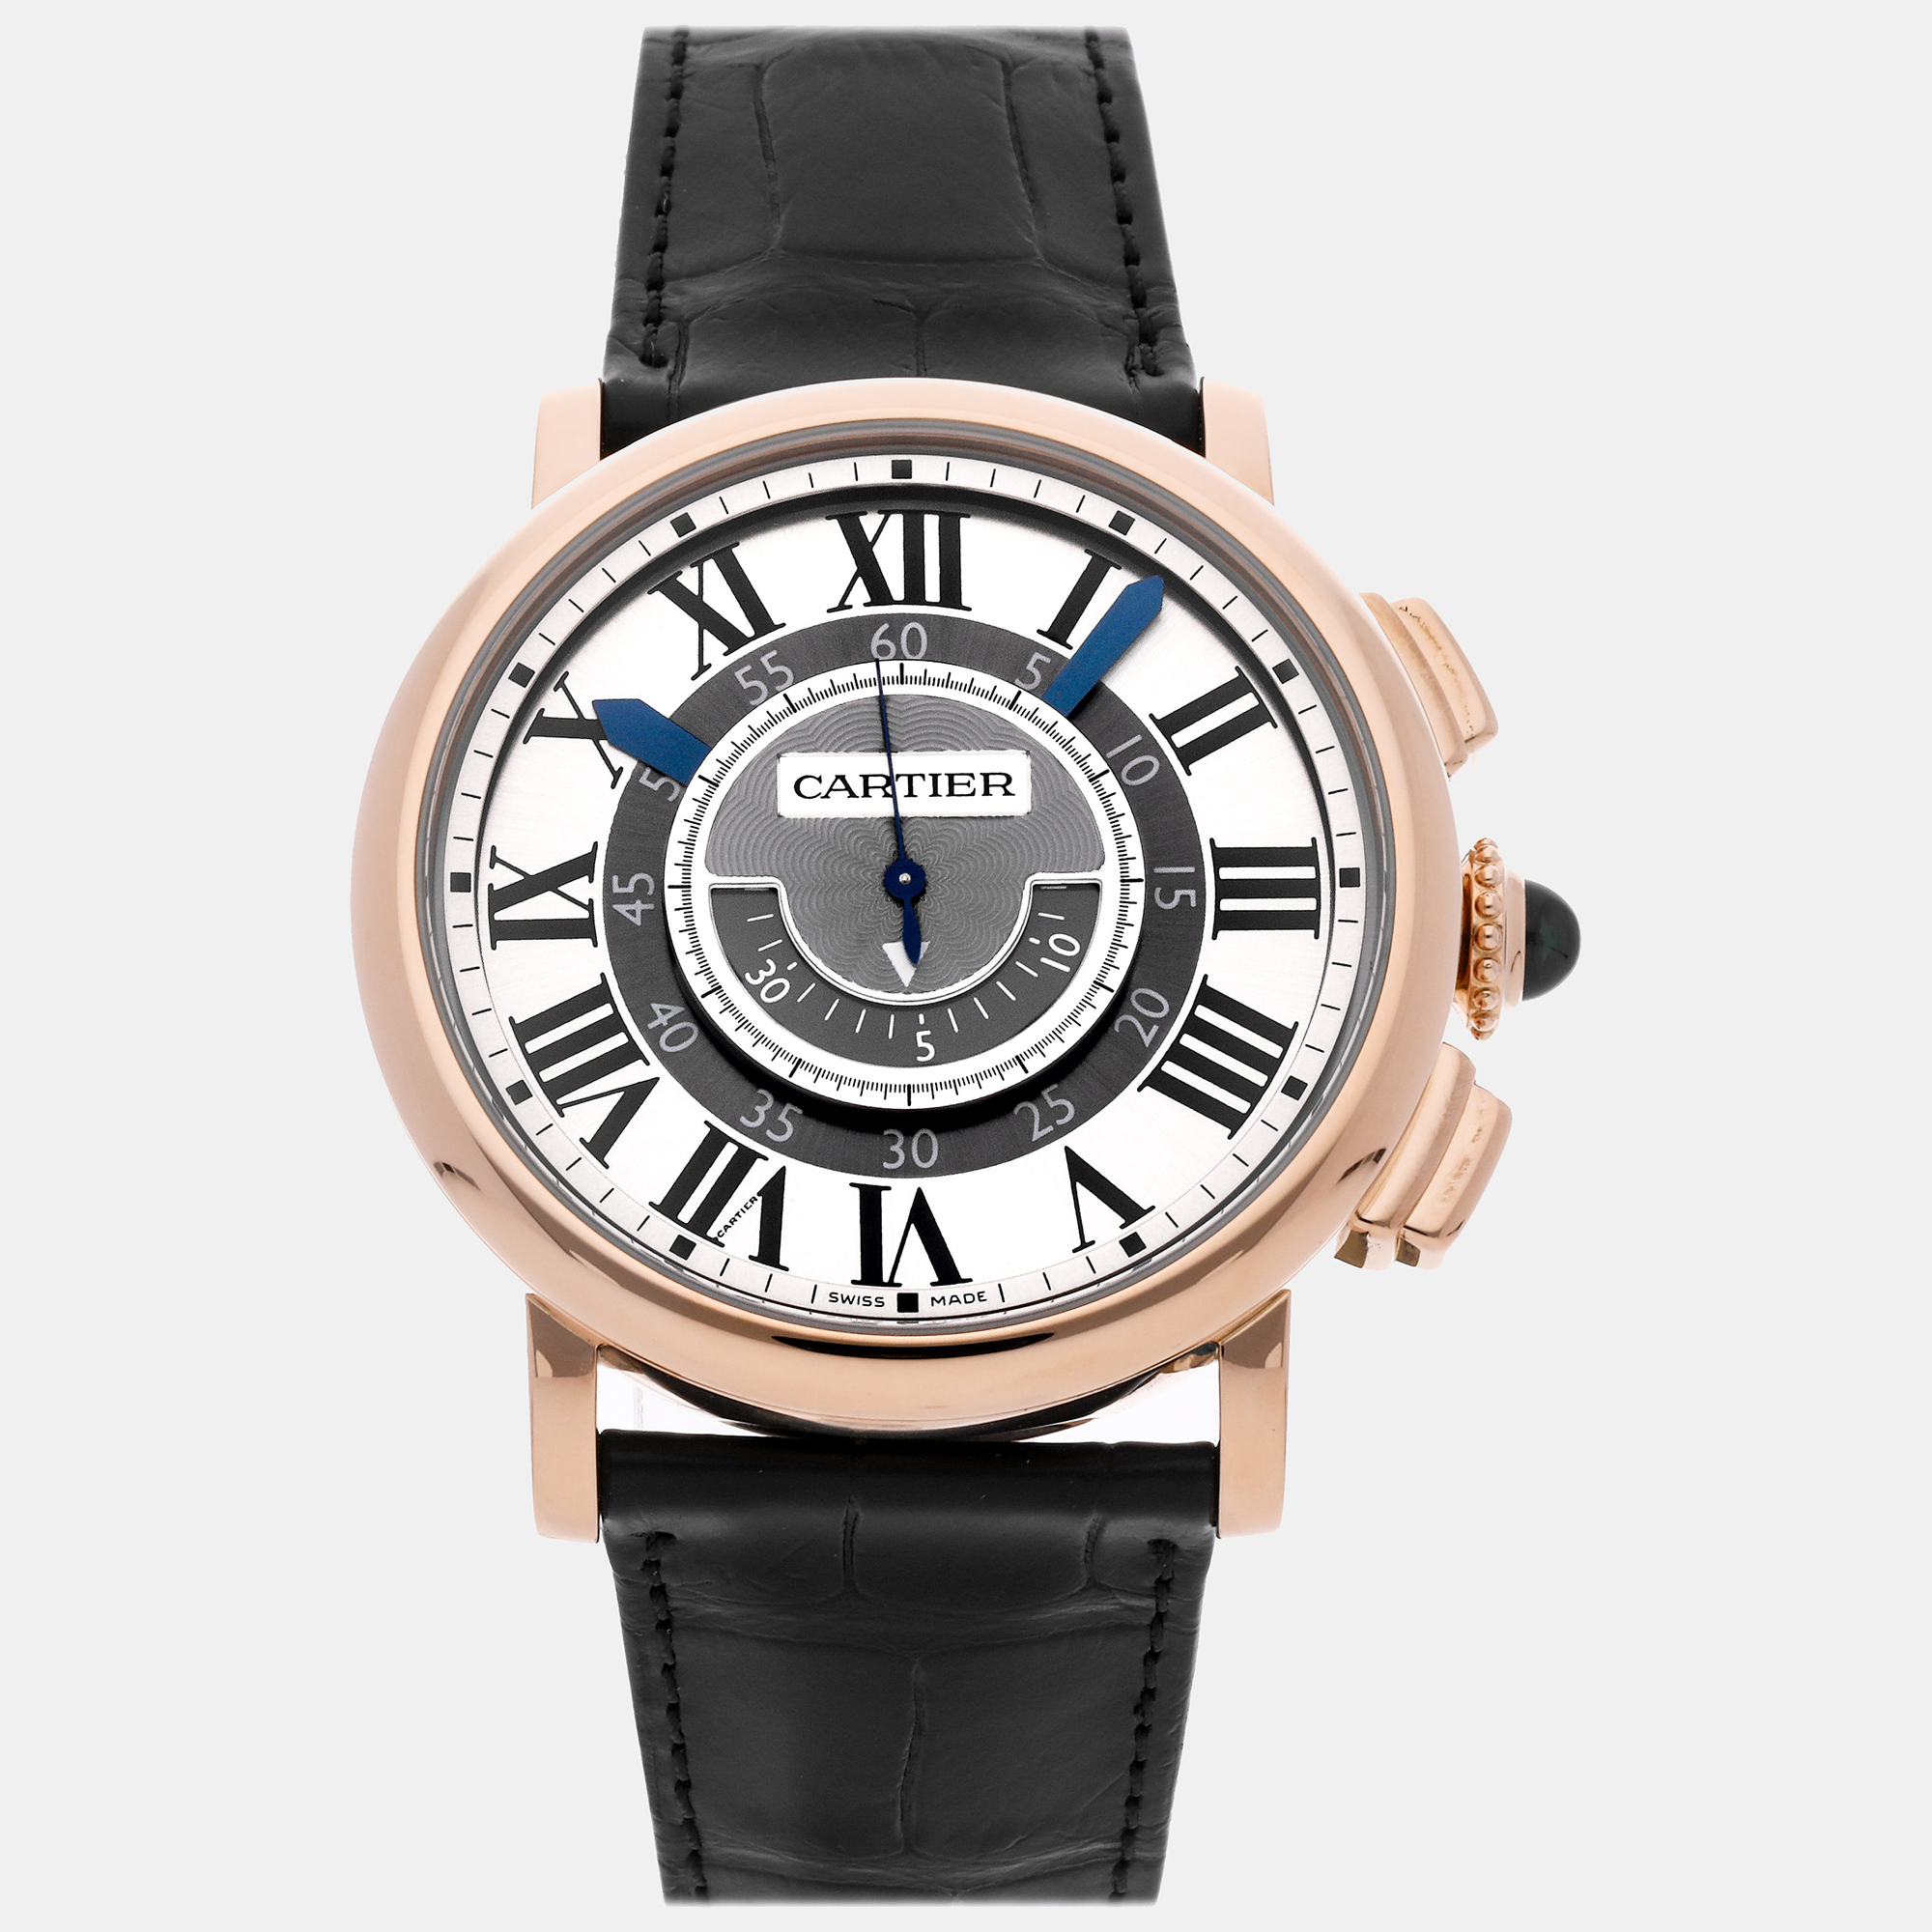 Cartier silver 18k rose gold rotonde de cartier w1555951 automatic men's wristwatch 42 mm